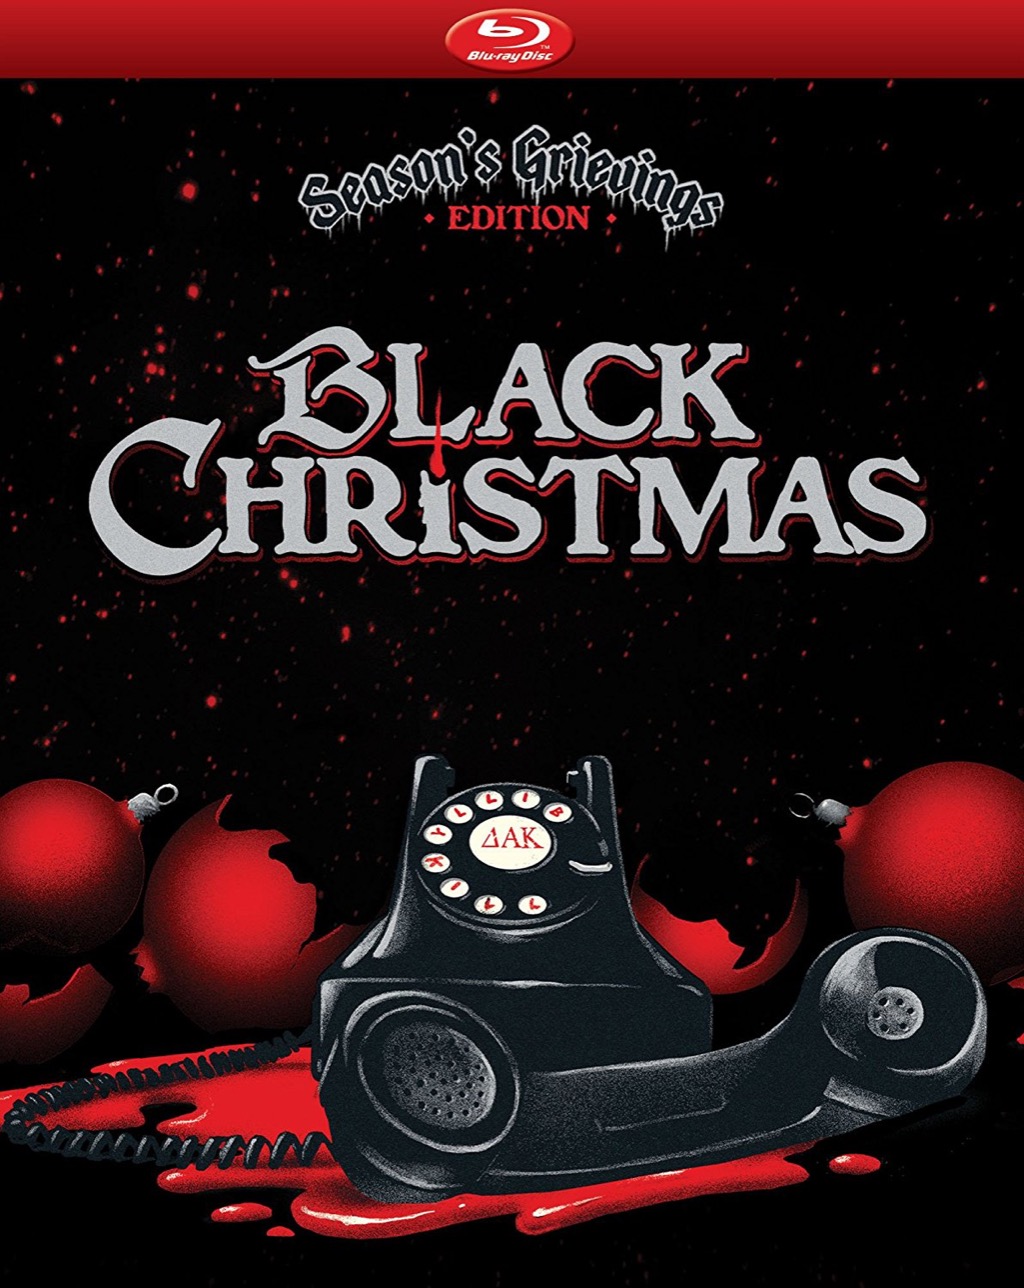 black christmas is a bad xmas movie